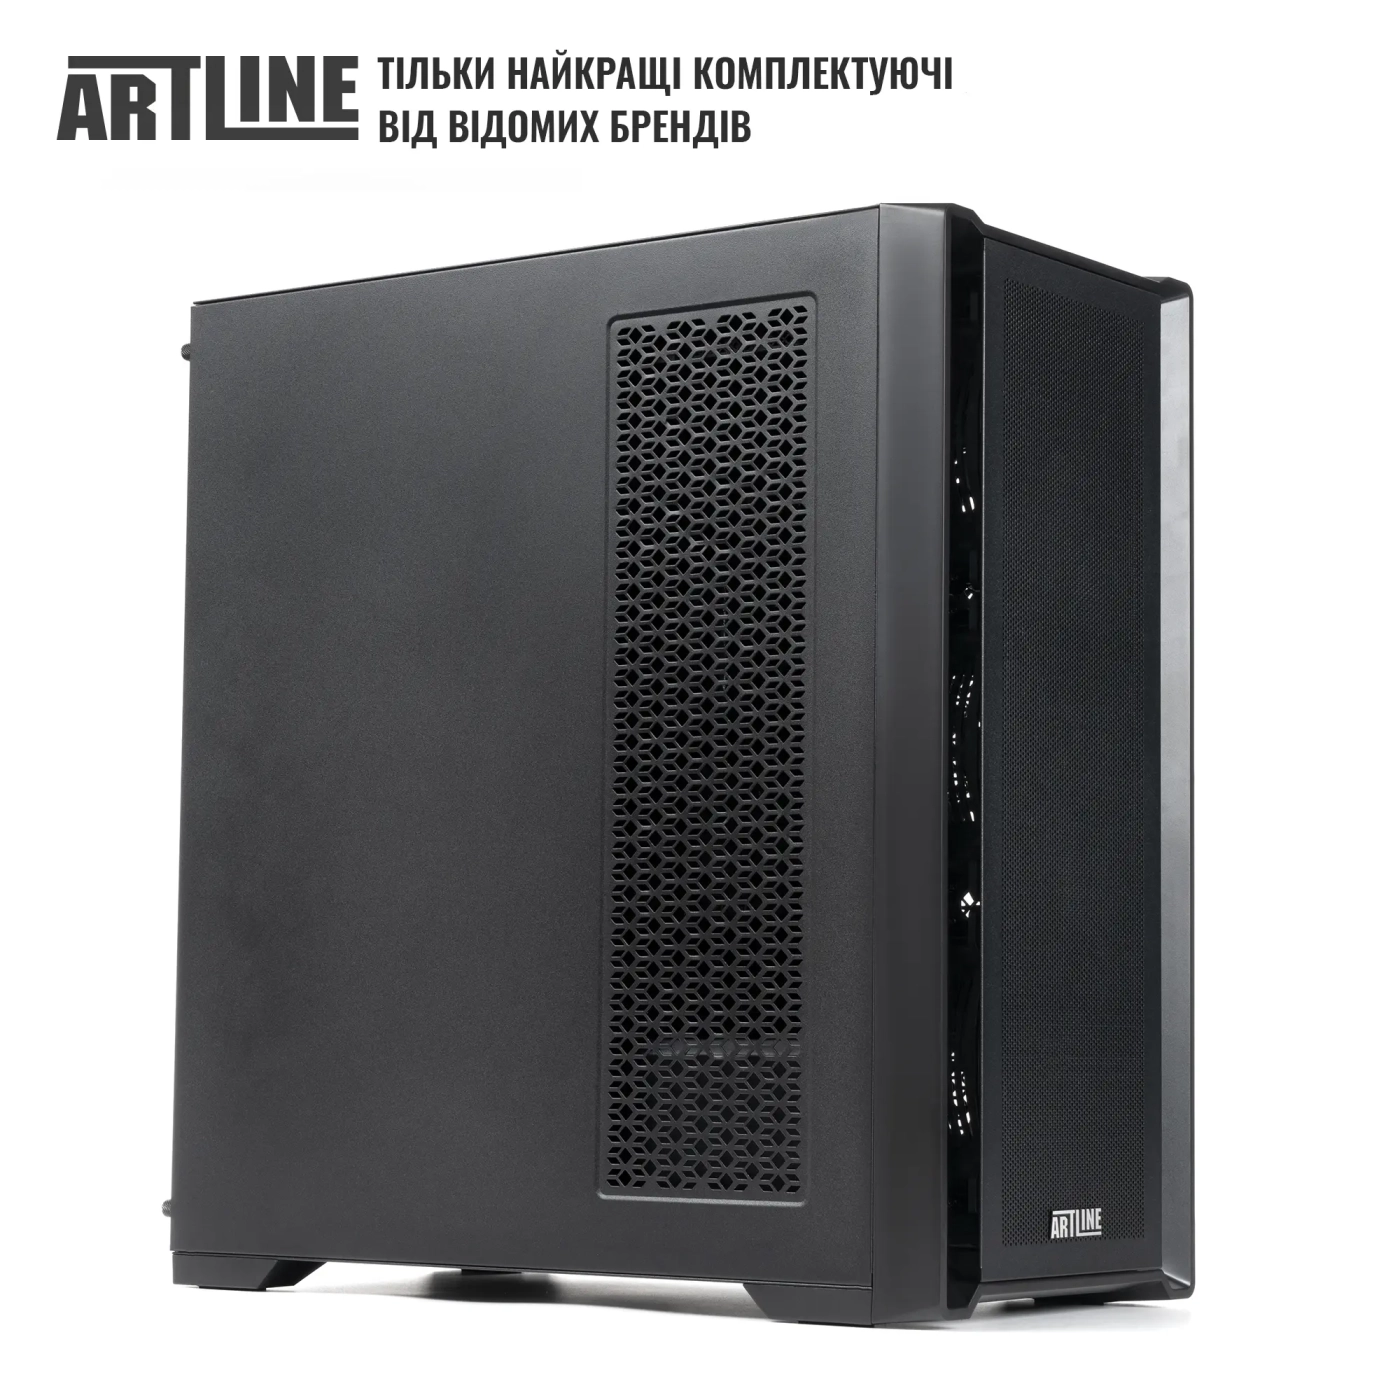 Купить Сервер ARTLINE Business T81 (T81v20) - фото 6